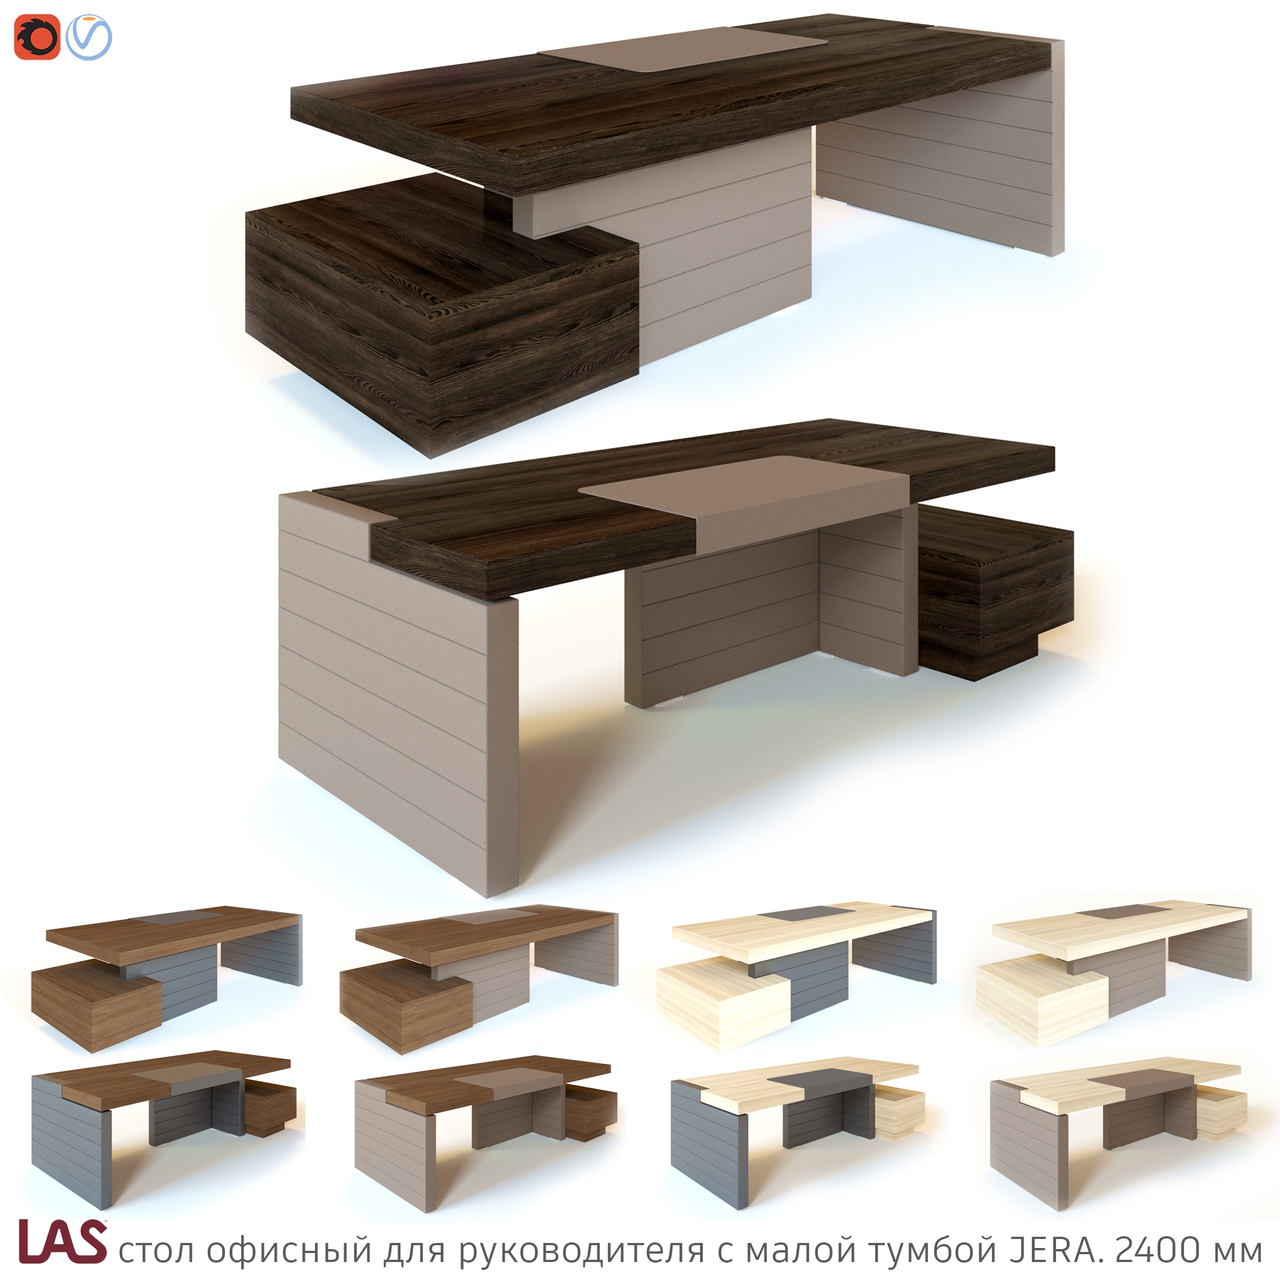 Превью 3D-модели офисного стола LAS Jera 159949 / 159952